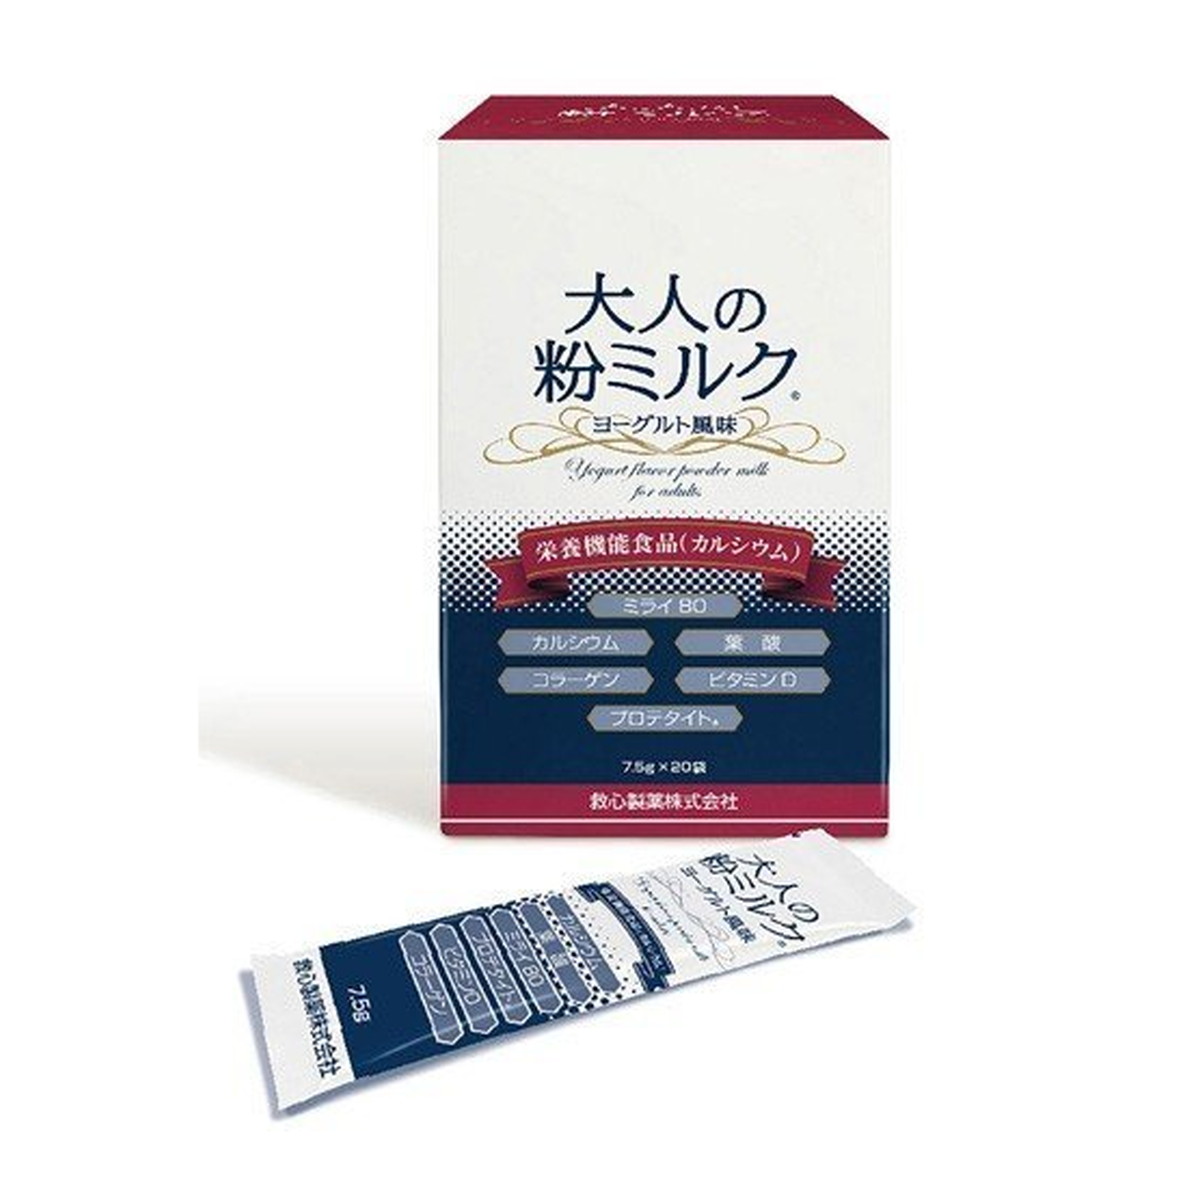 【送料込】救心製薬 大人の粉ミルク ヨーグルト風味 7.5g×20袋入 栄養機能食品 1個